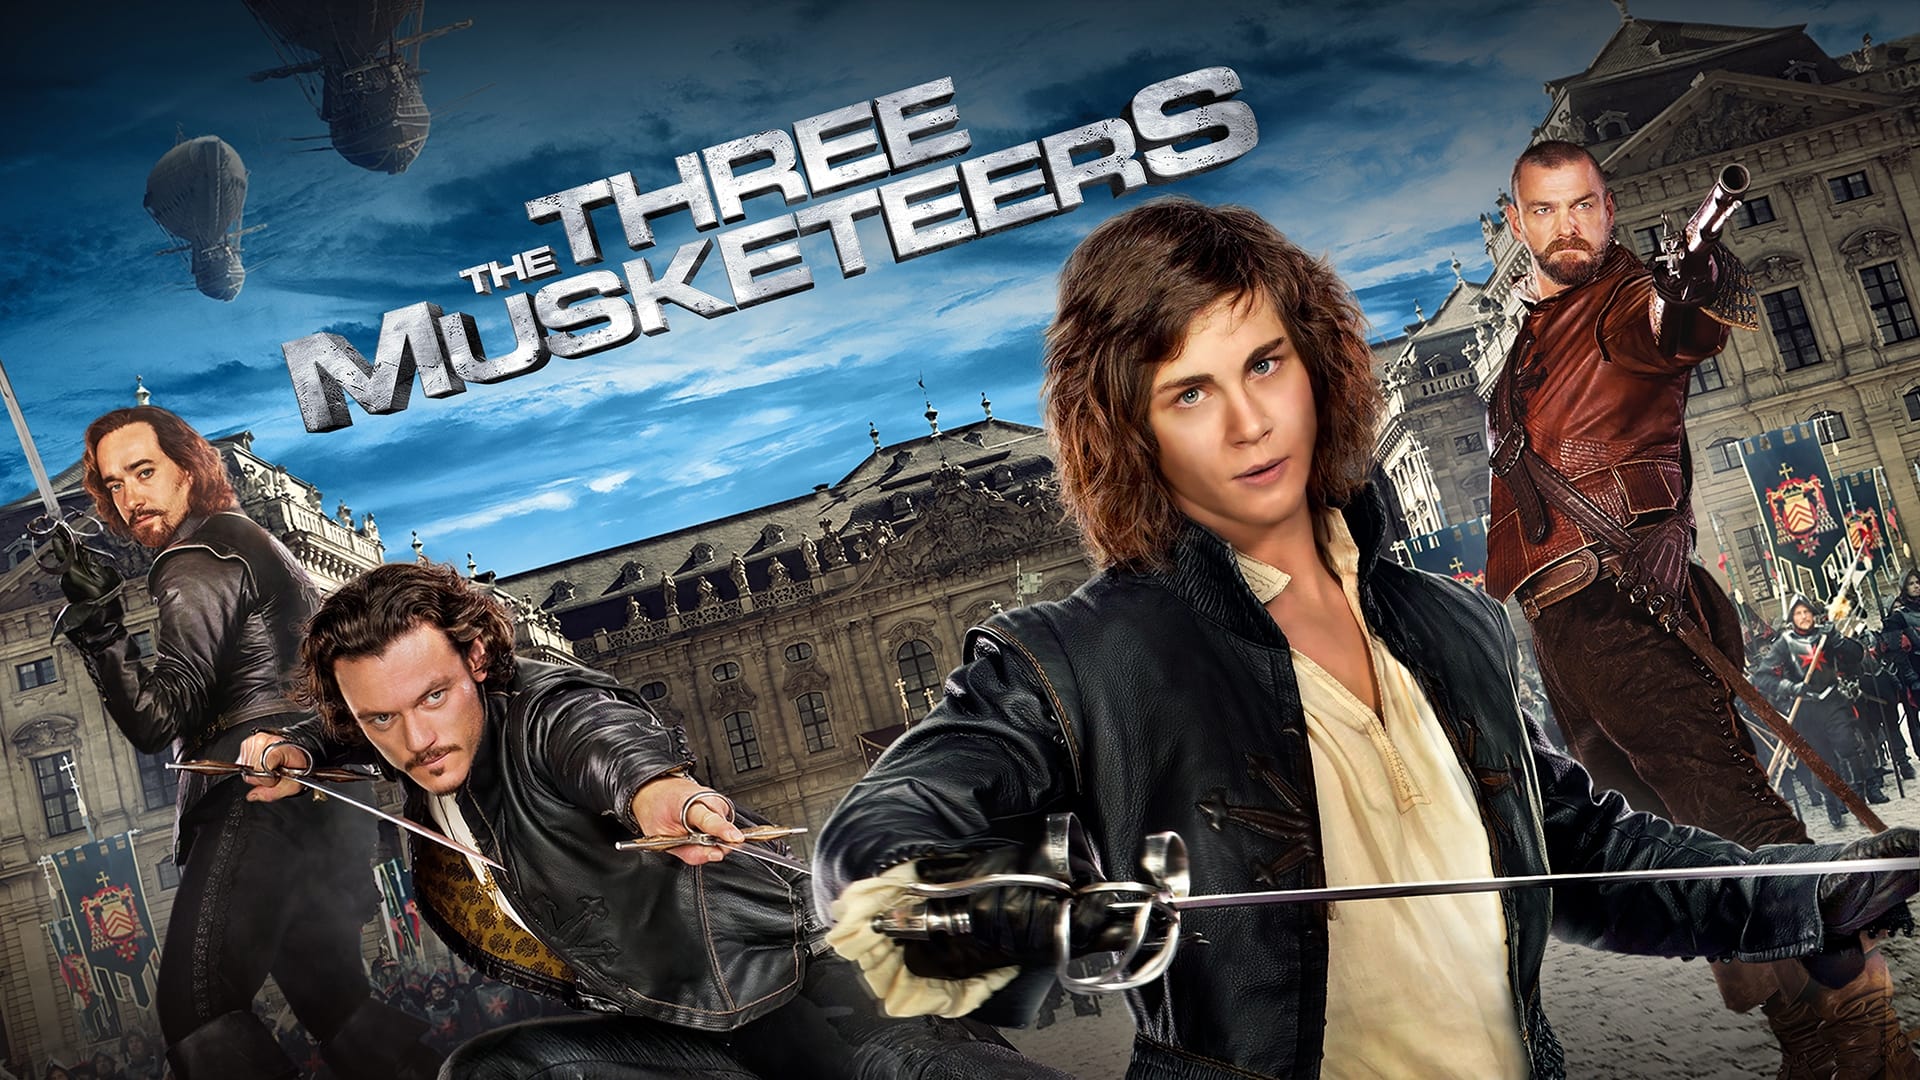 Die drei Musketiere (2011)